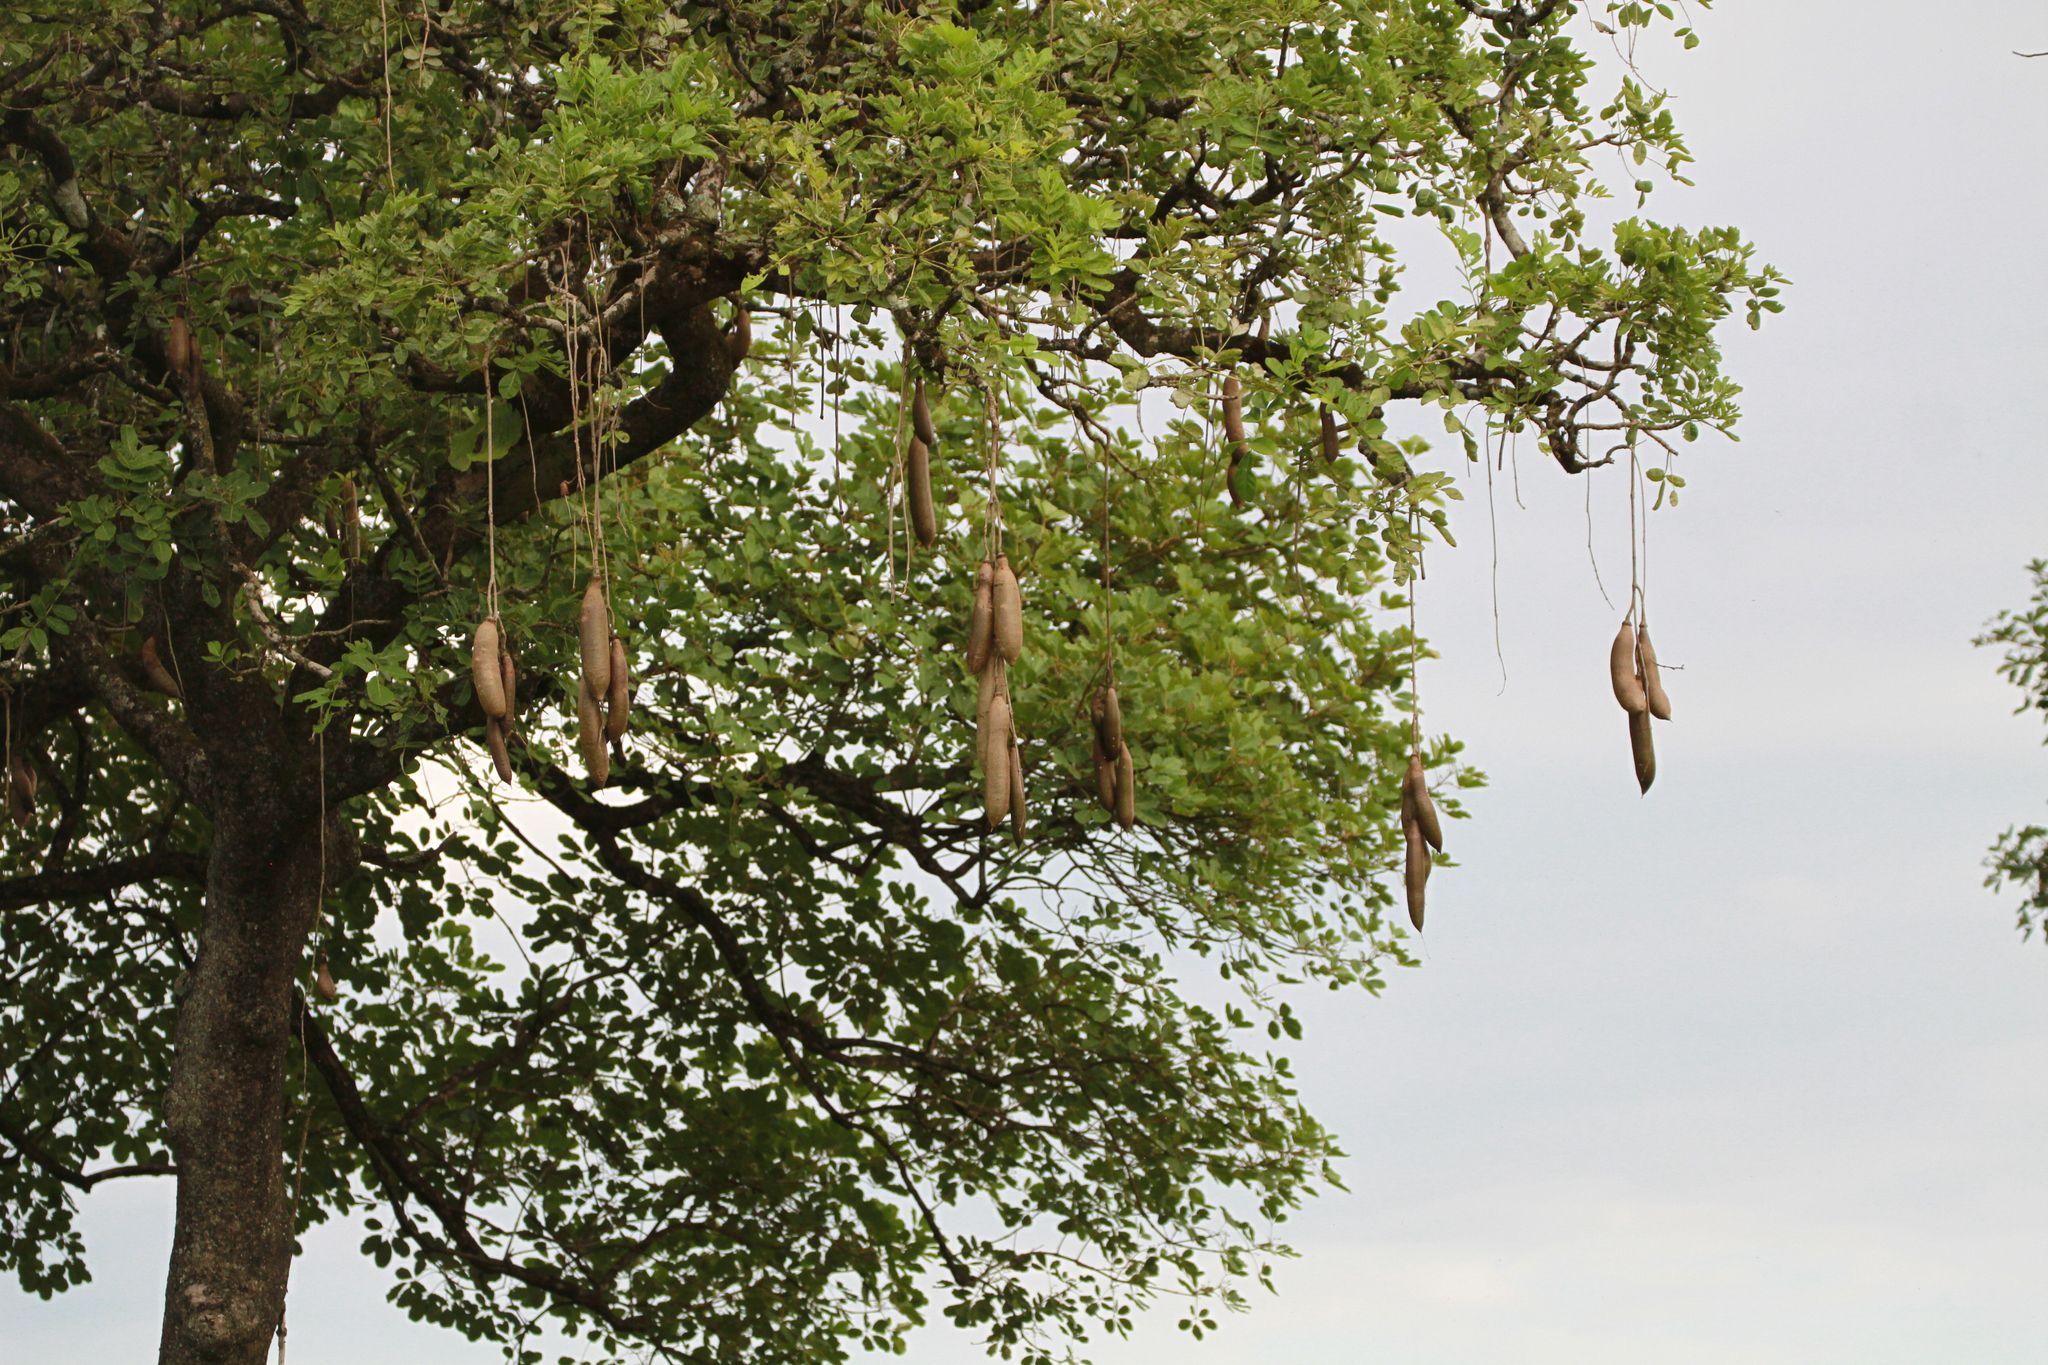 Kigelia Africana (Mvunguti) hanging fruit